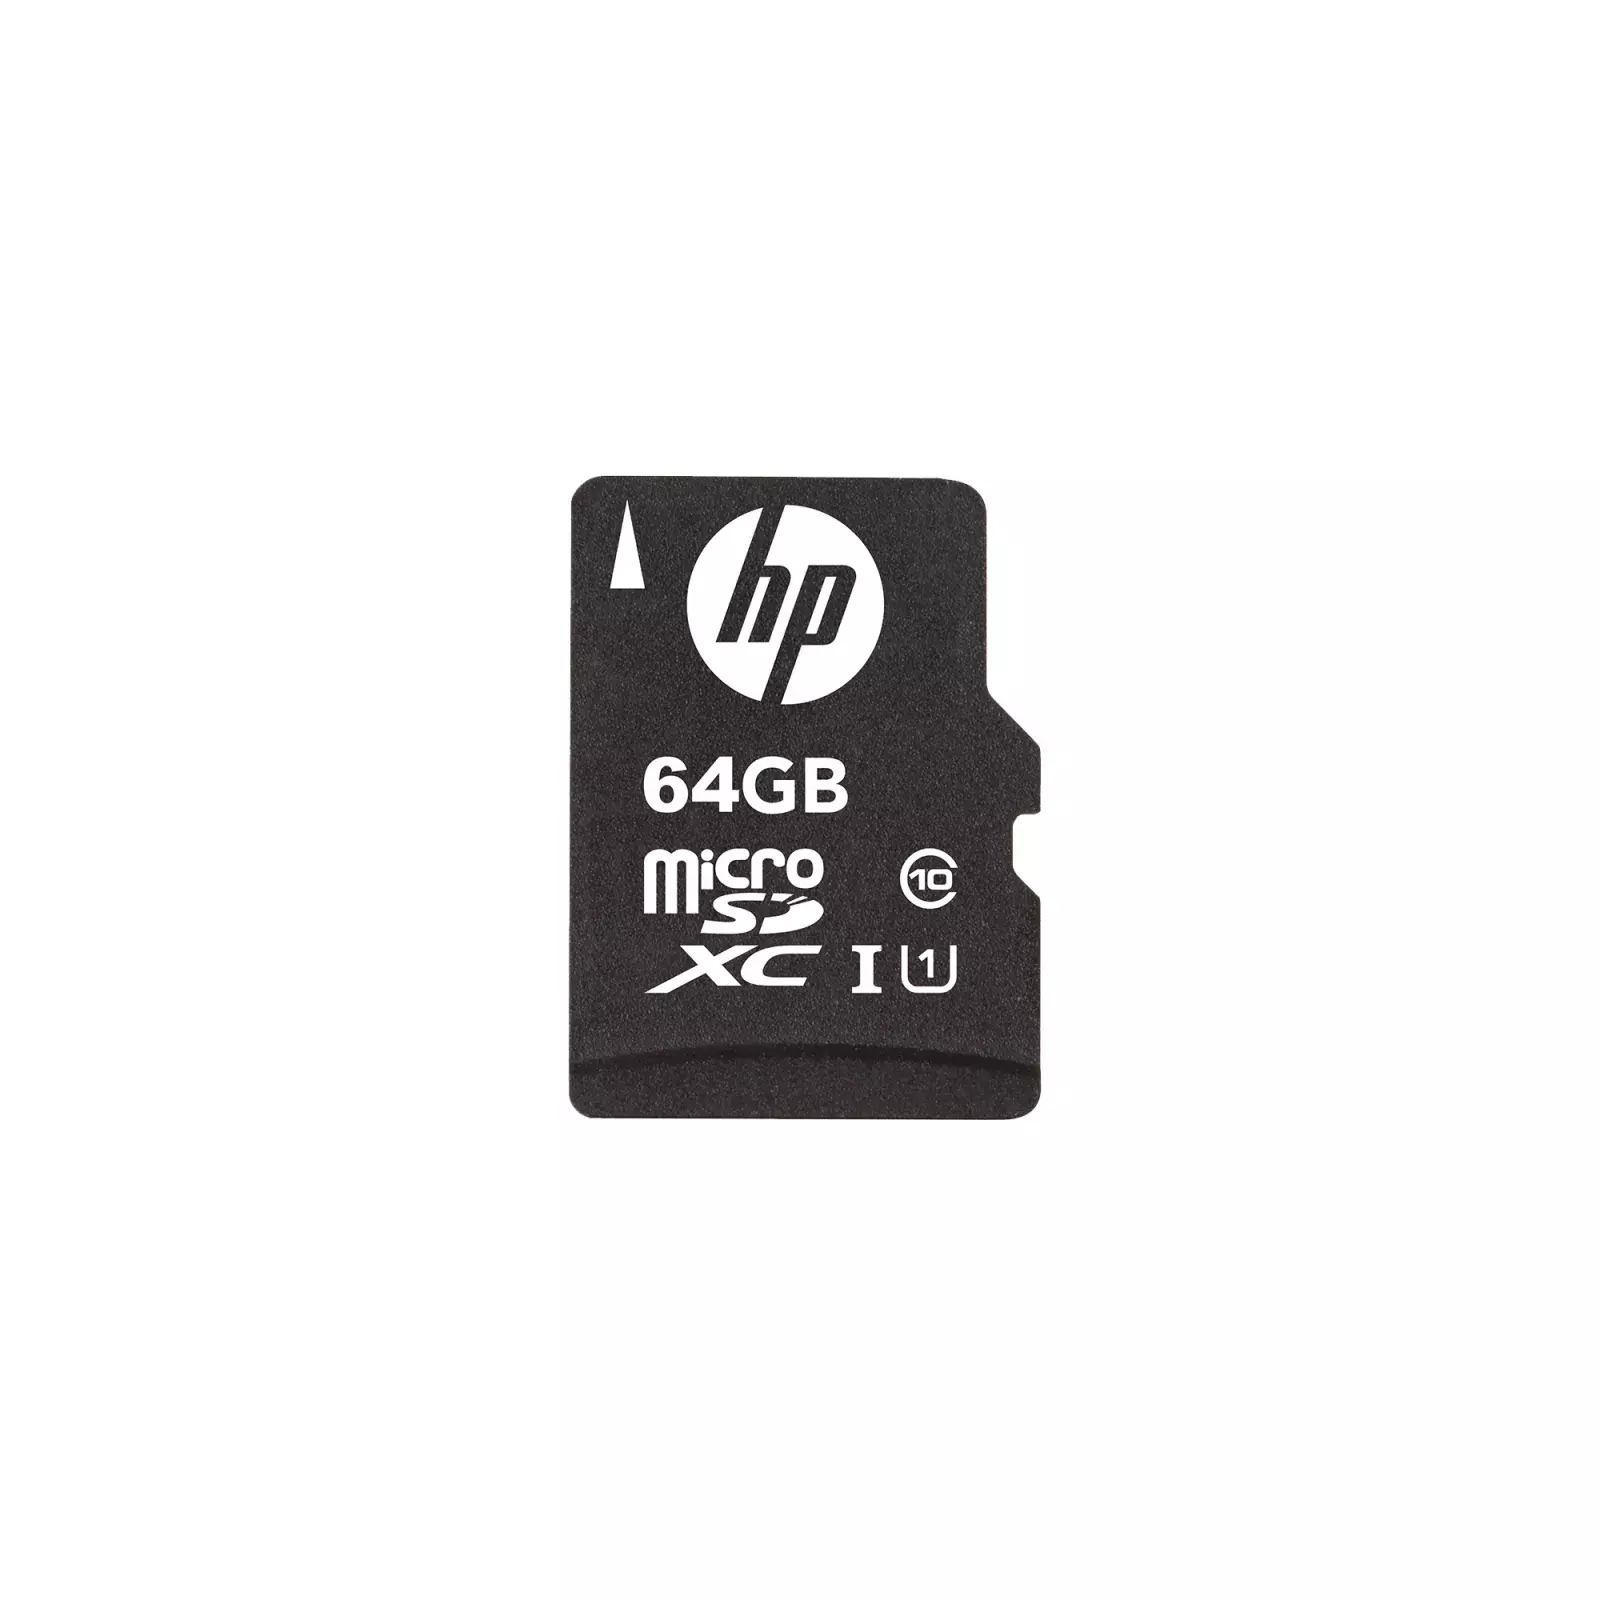 HP SDU64GBXC10HP-EF Photo 1